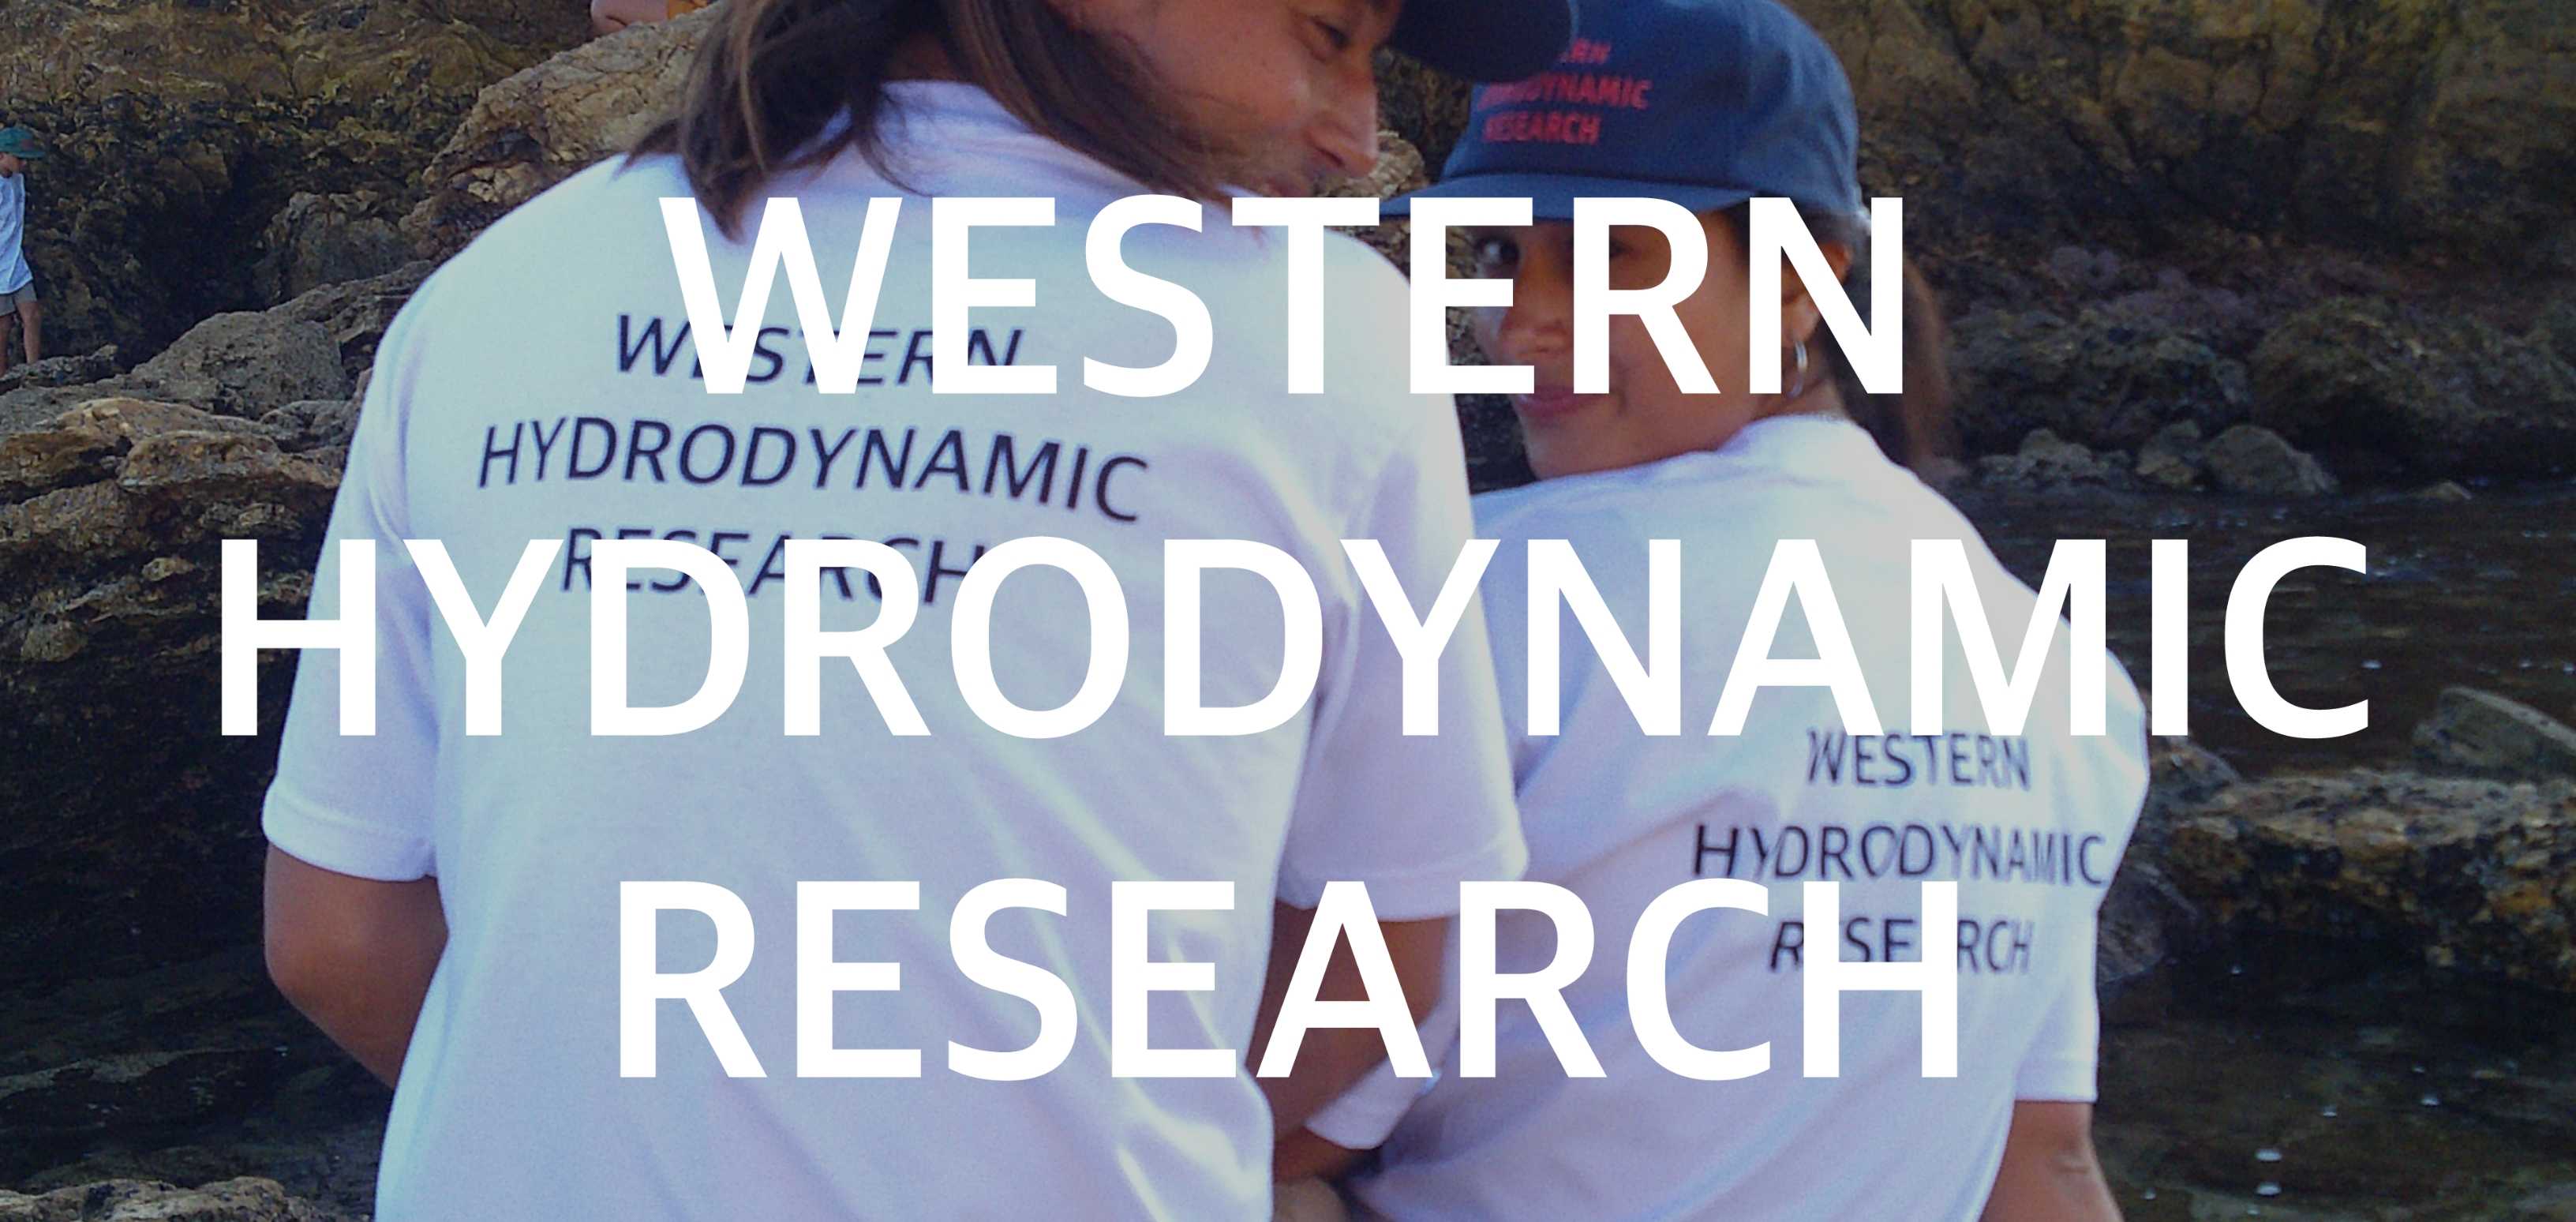 WESTERN HYDRODYNAMIC RESEARCH